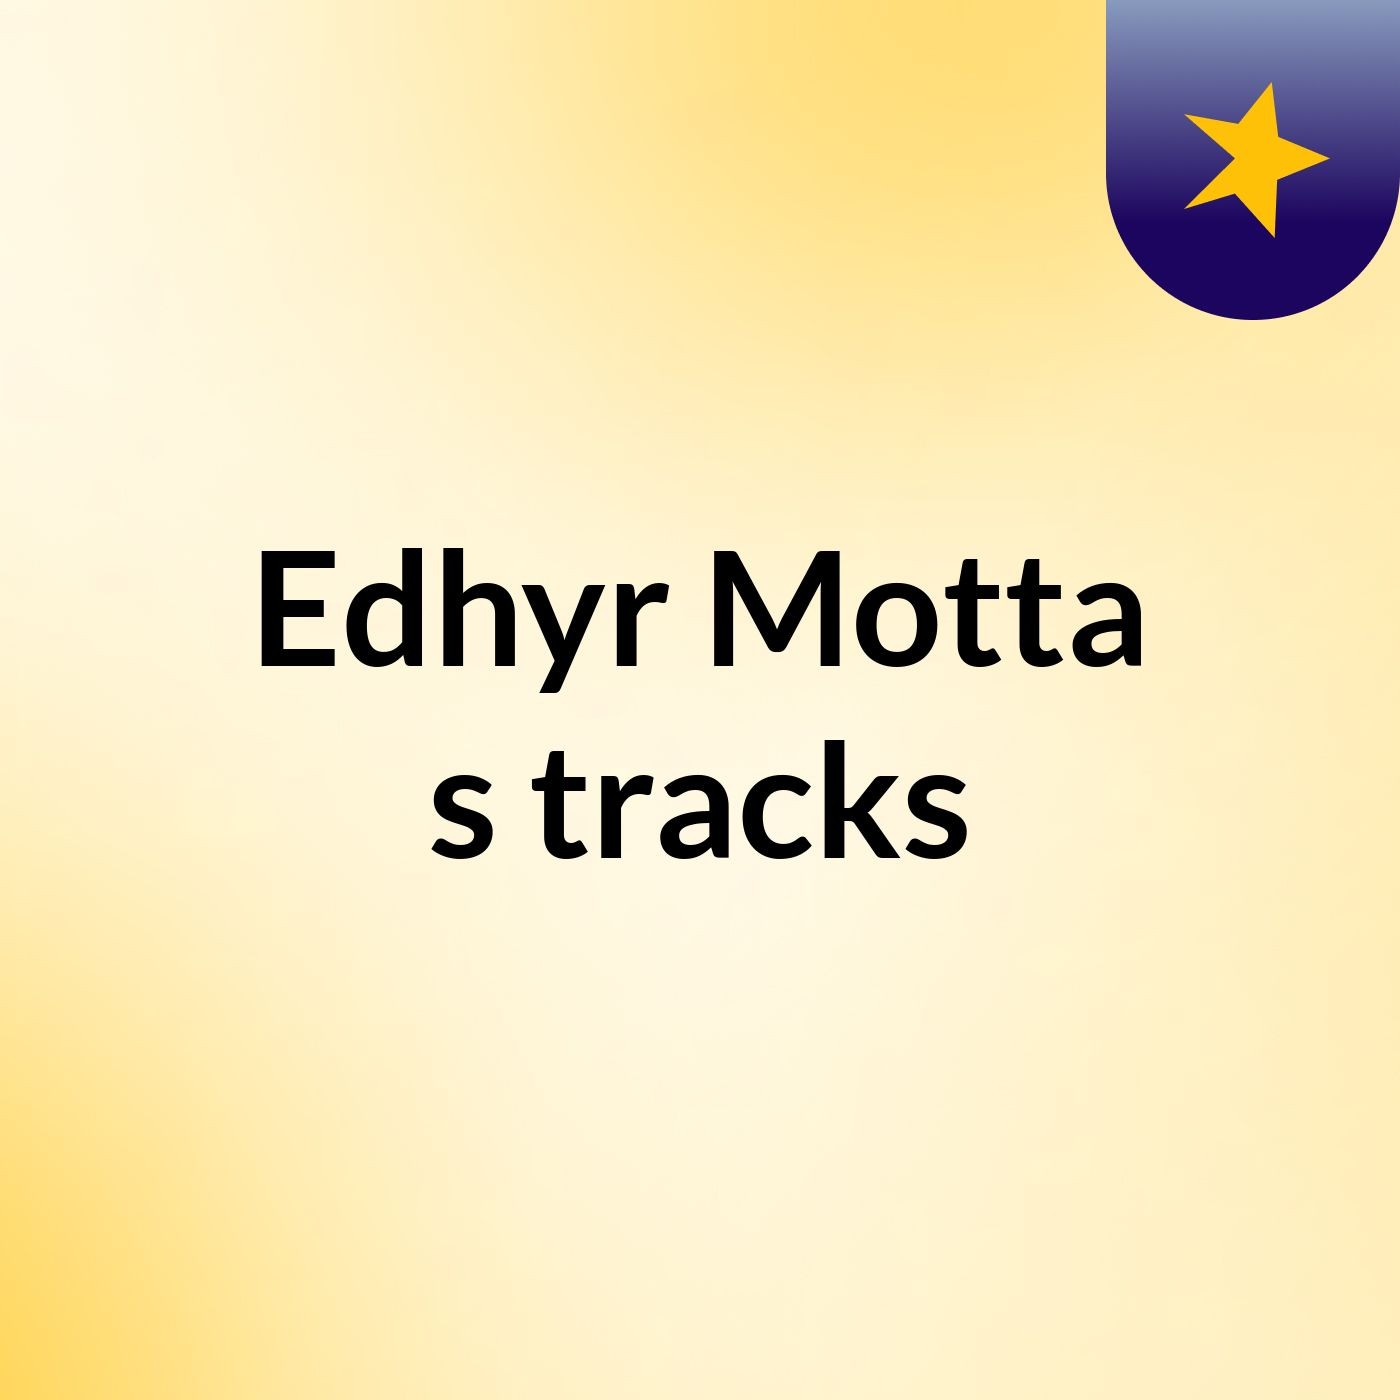 Edhyr Motta's tracks